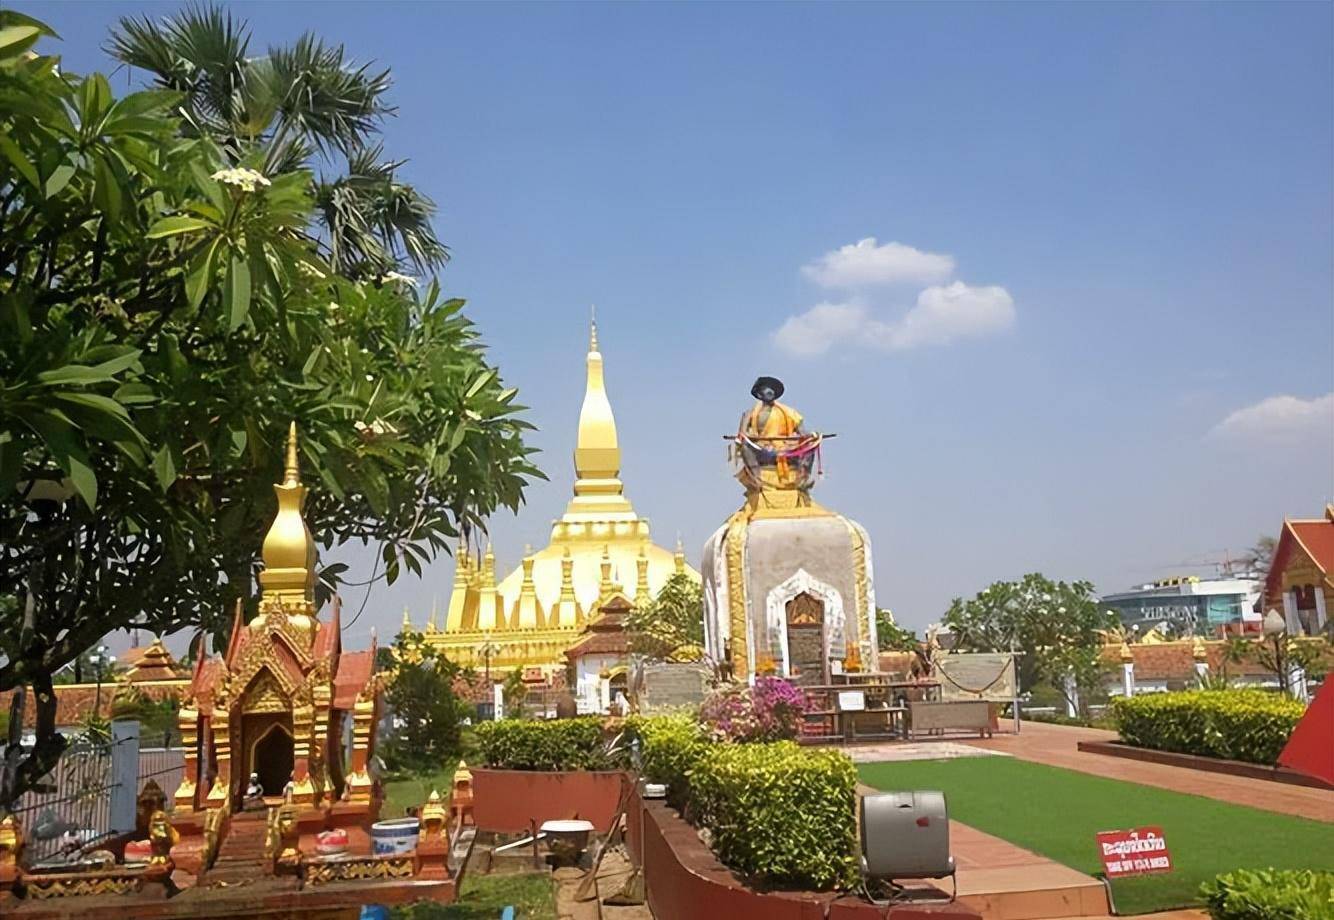 老挝矿产资源丰富,经济落后风景优美,凯旋门塔銮壮观,旅游胜地